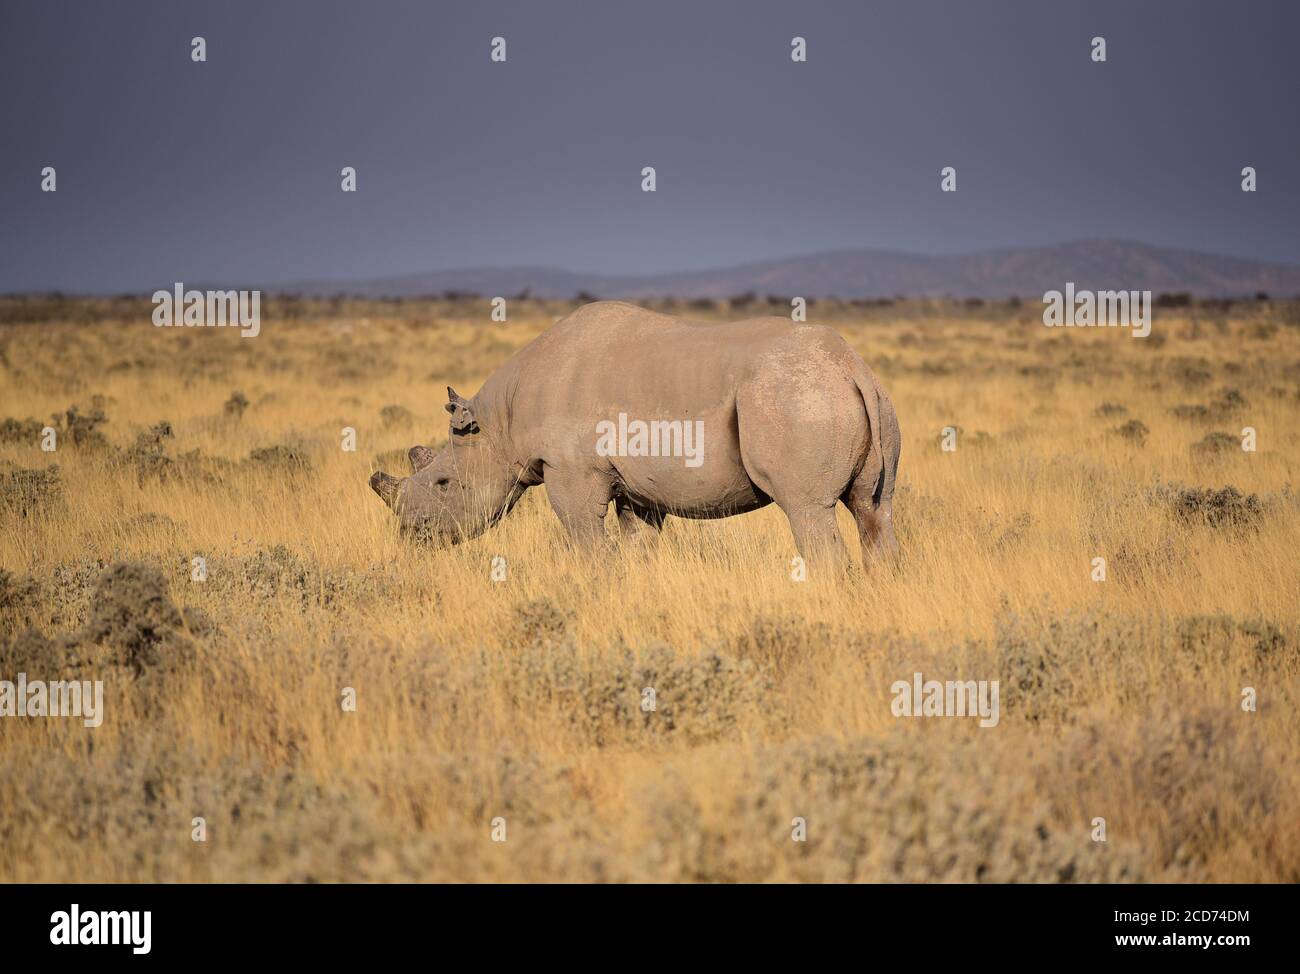 Rhinocéros noirs ou rhinocéros à lèvres accrochantées (Diceros bicornis) avec cornes coupées. Parc national d'Etosha, Namibie Banque D'Images